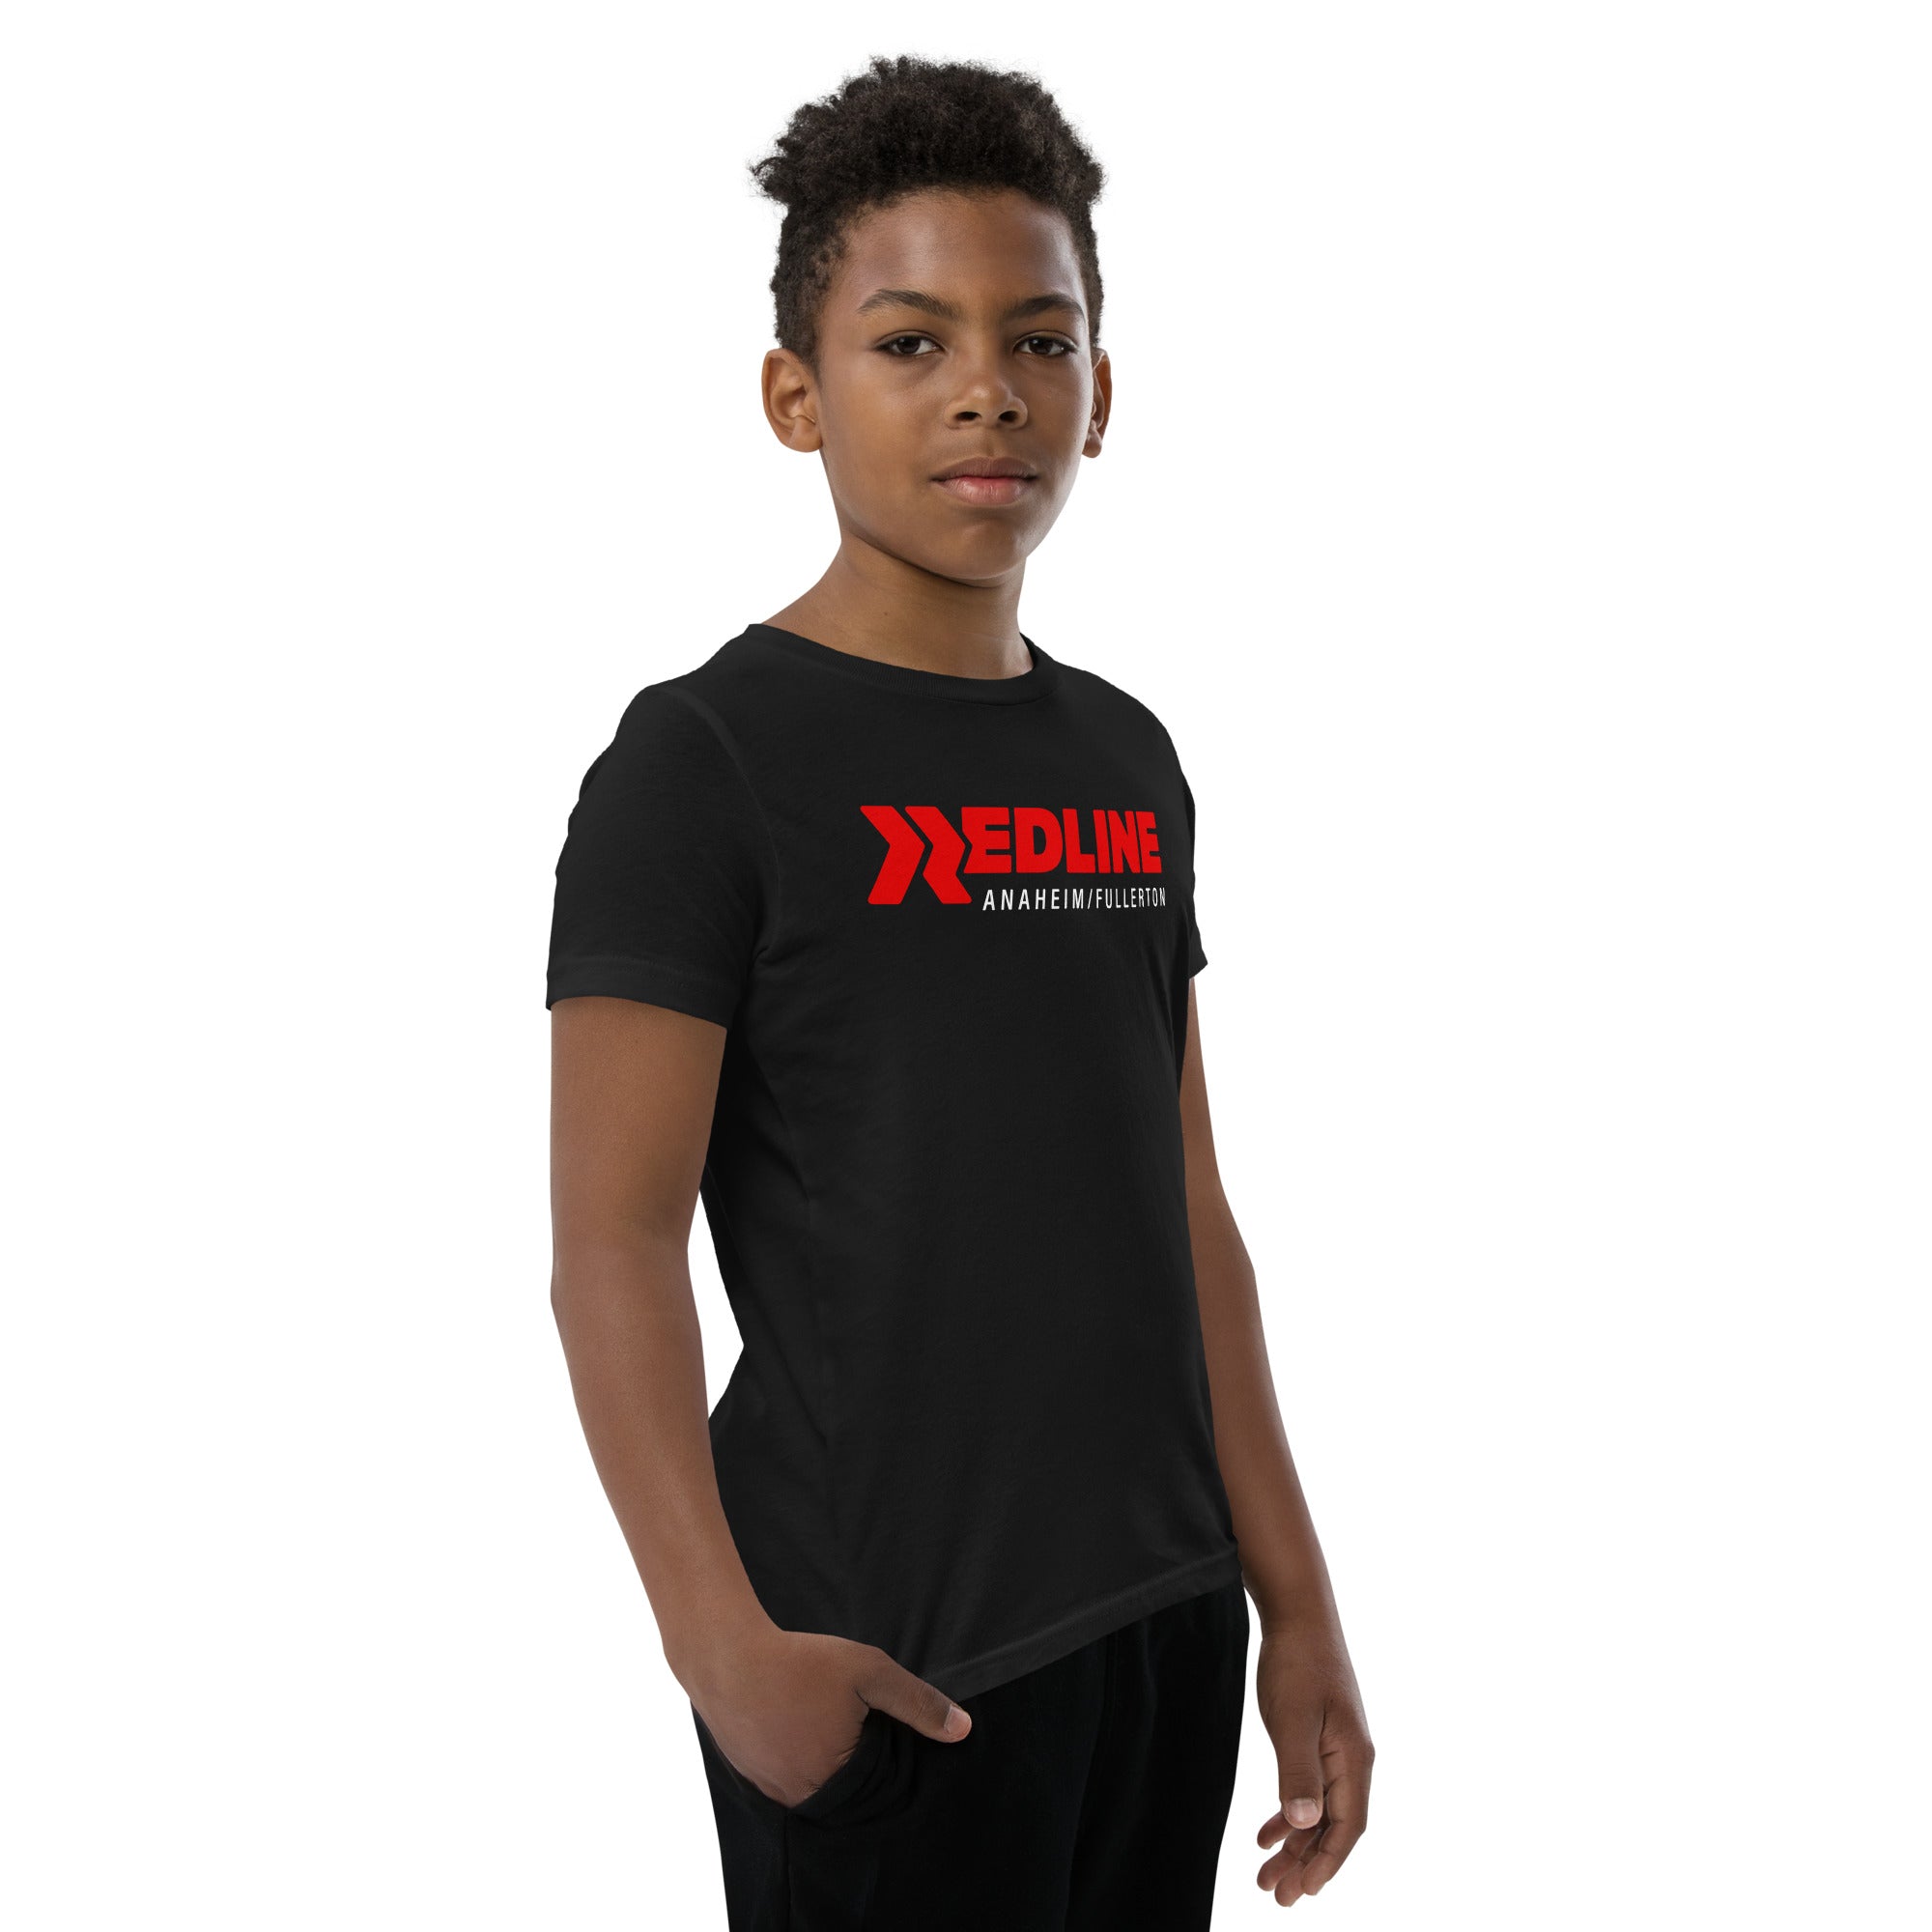 A/F R/W Logo - Black Youth Short Sleeve T-Shirt